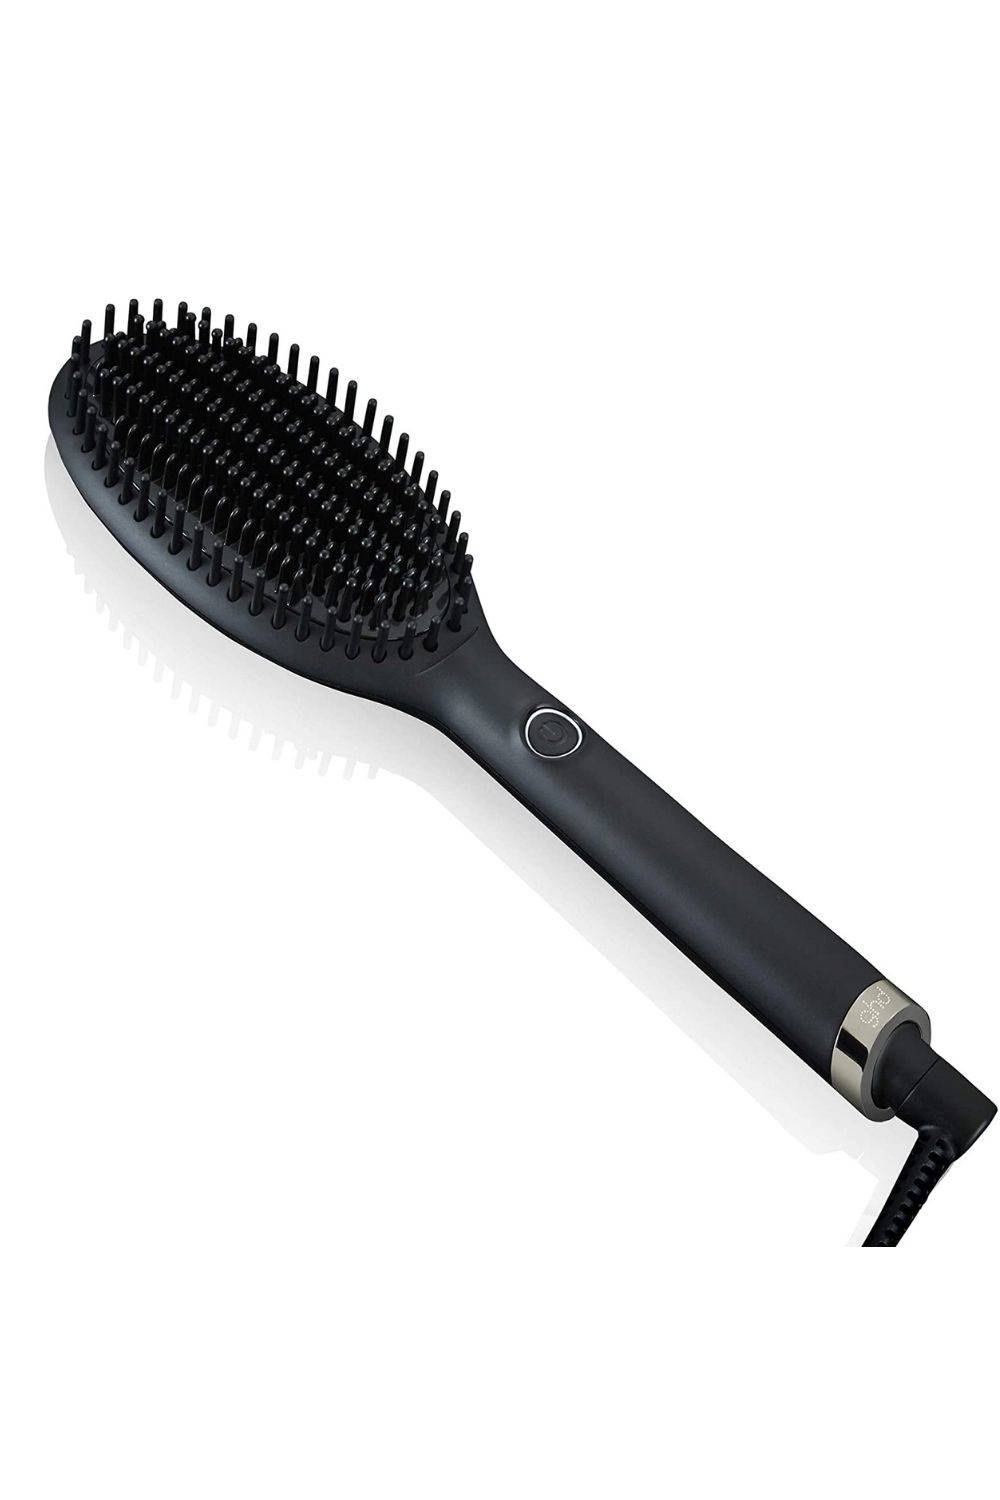 ghd glide - Cepillo eléctrico alisador de pelo con tecnología iónica, Negro